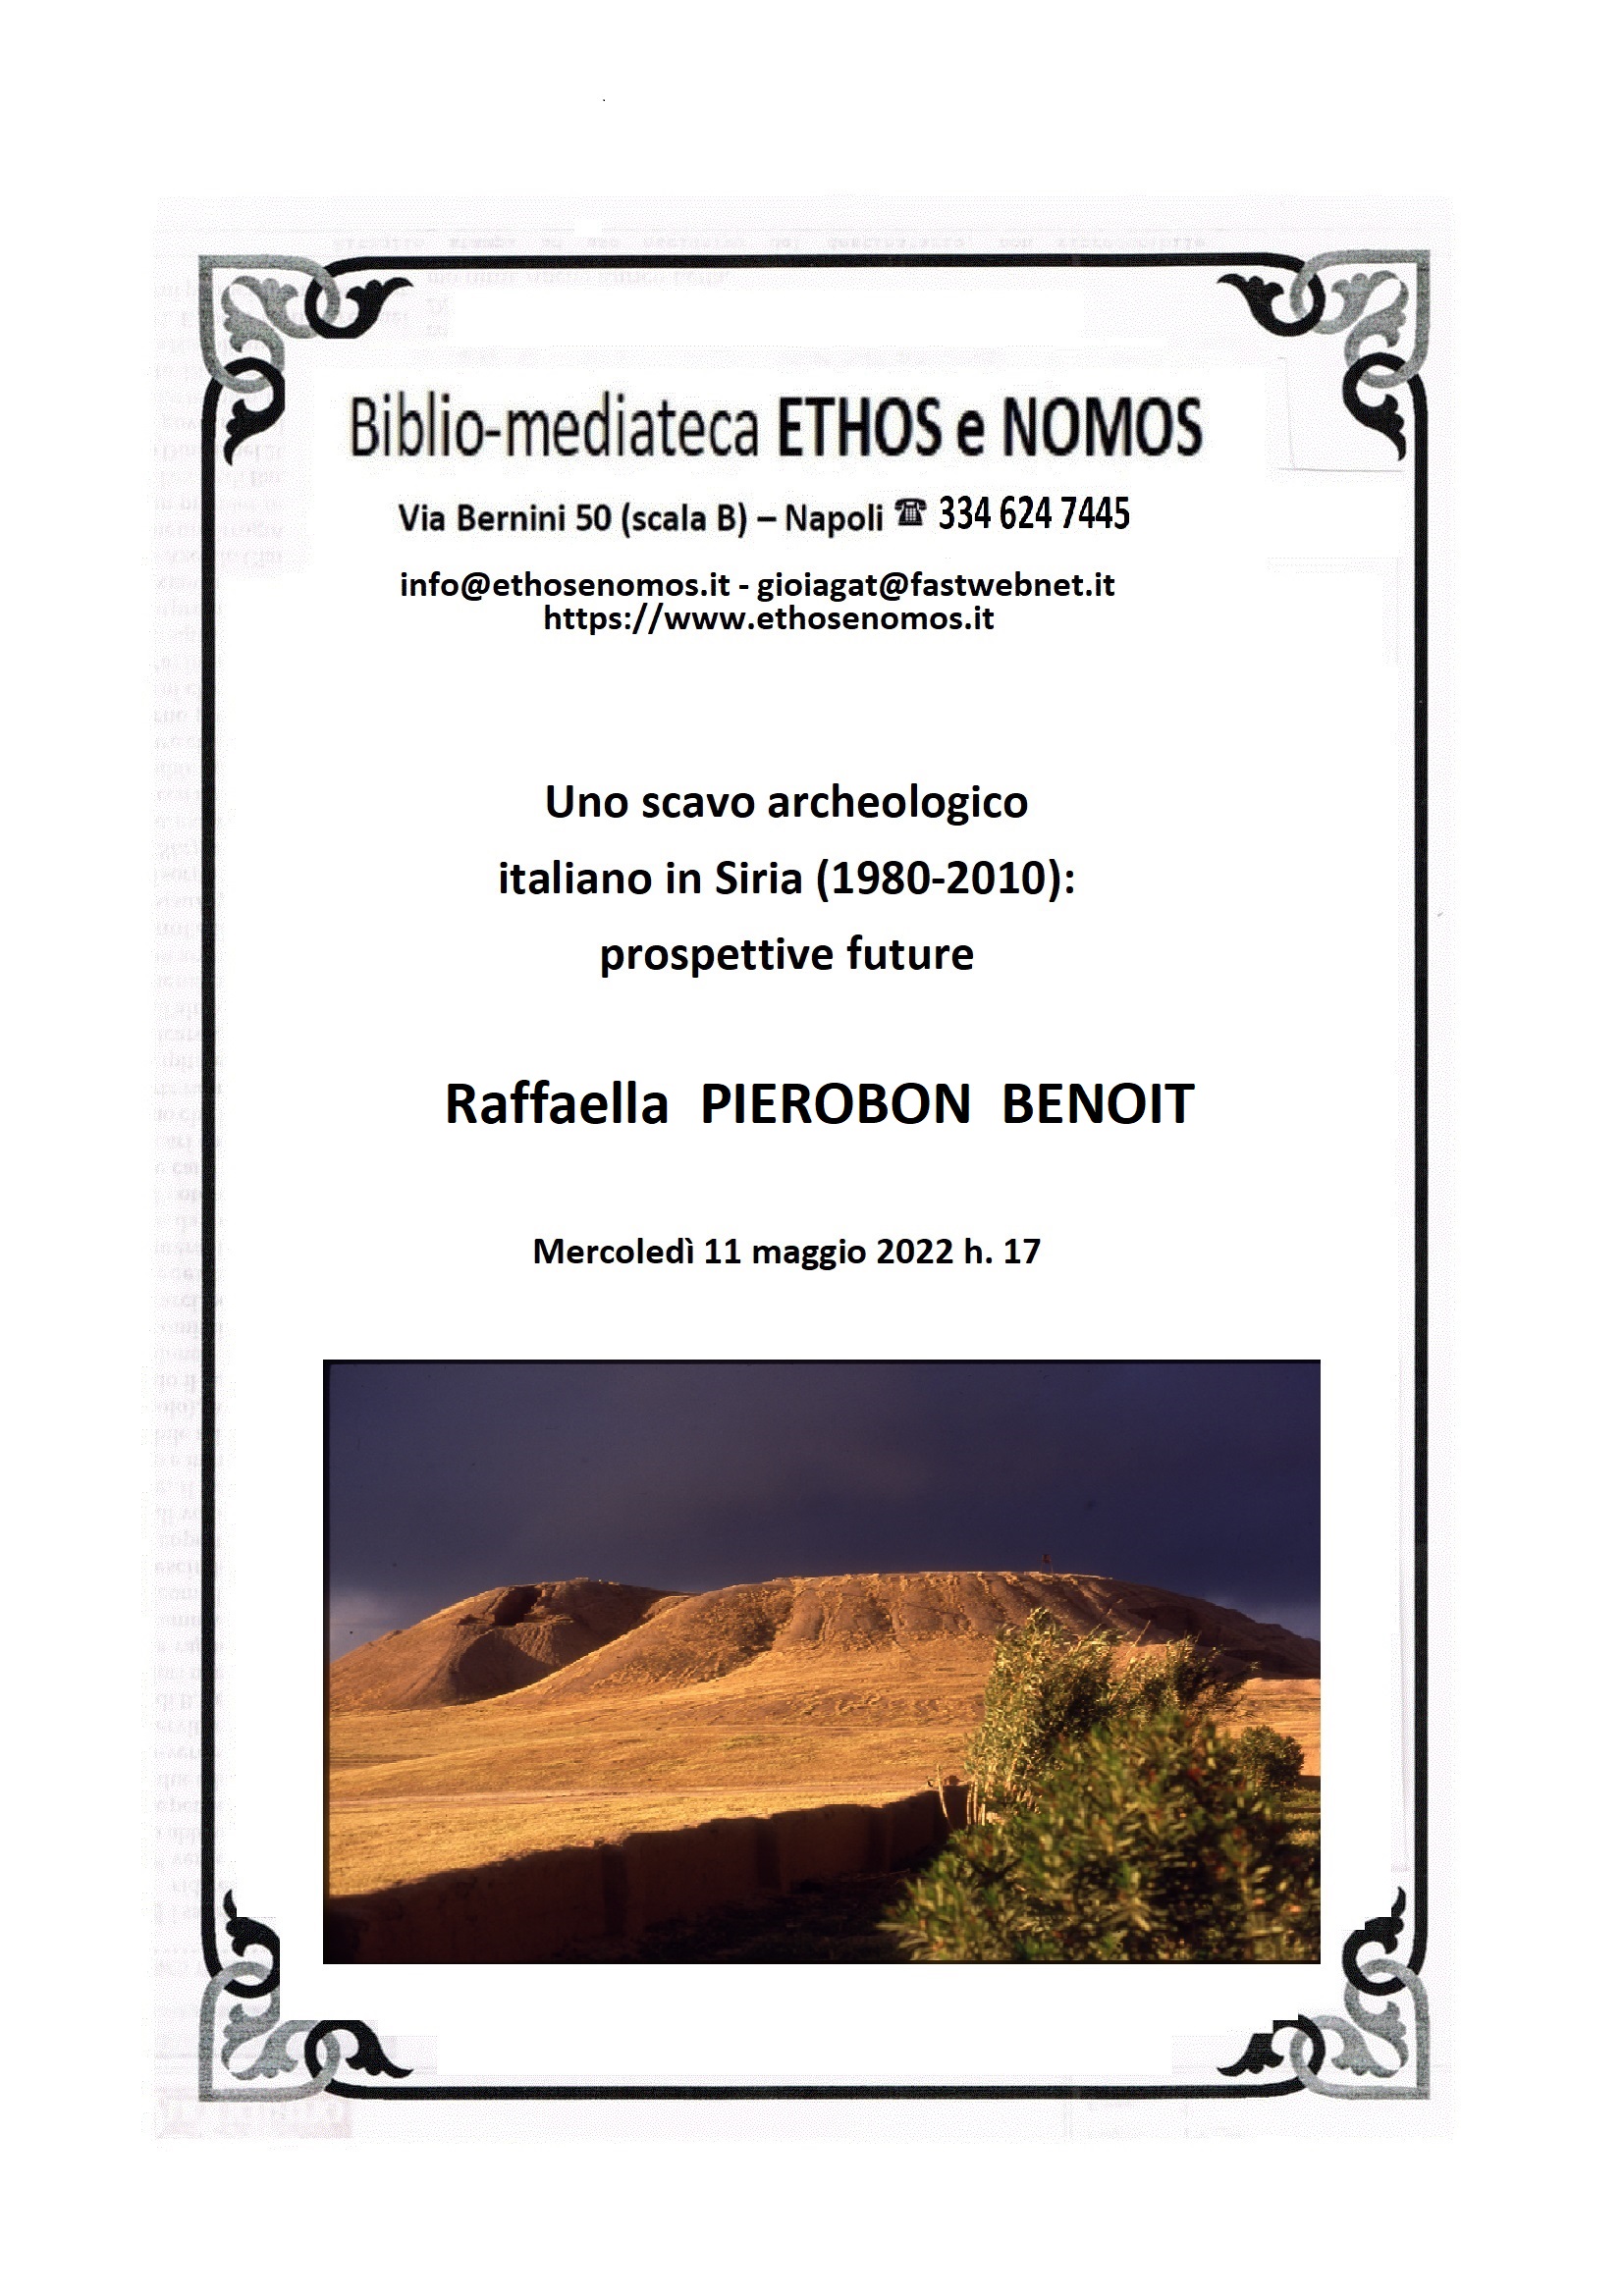 Raffaella PIEROBON  BENOIT - Uno scavo archeologico italiano in Siria (1980-2010): prospettive future